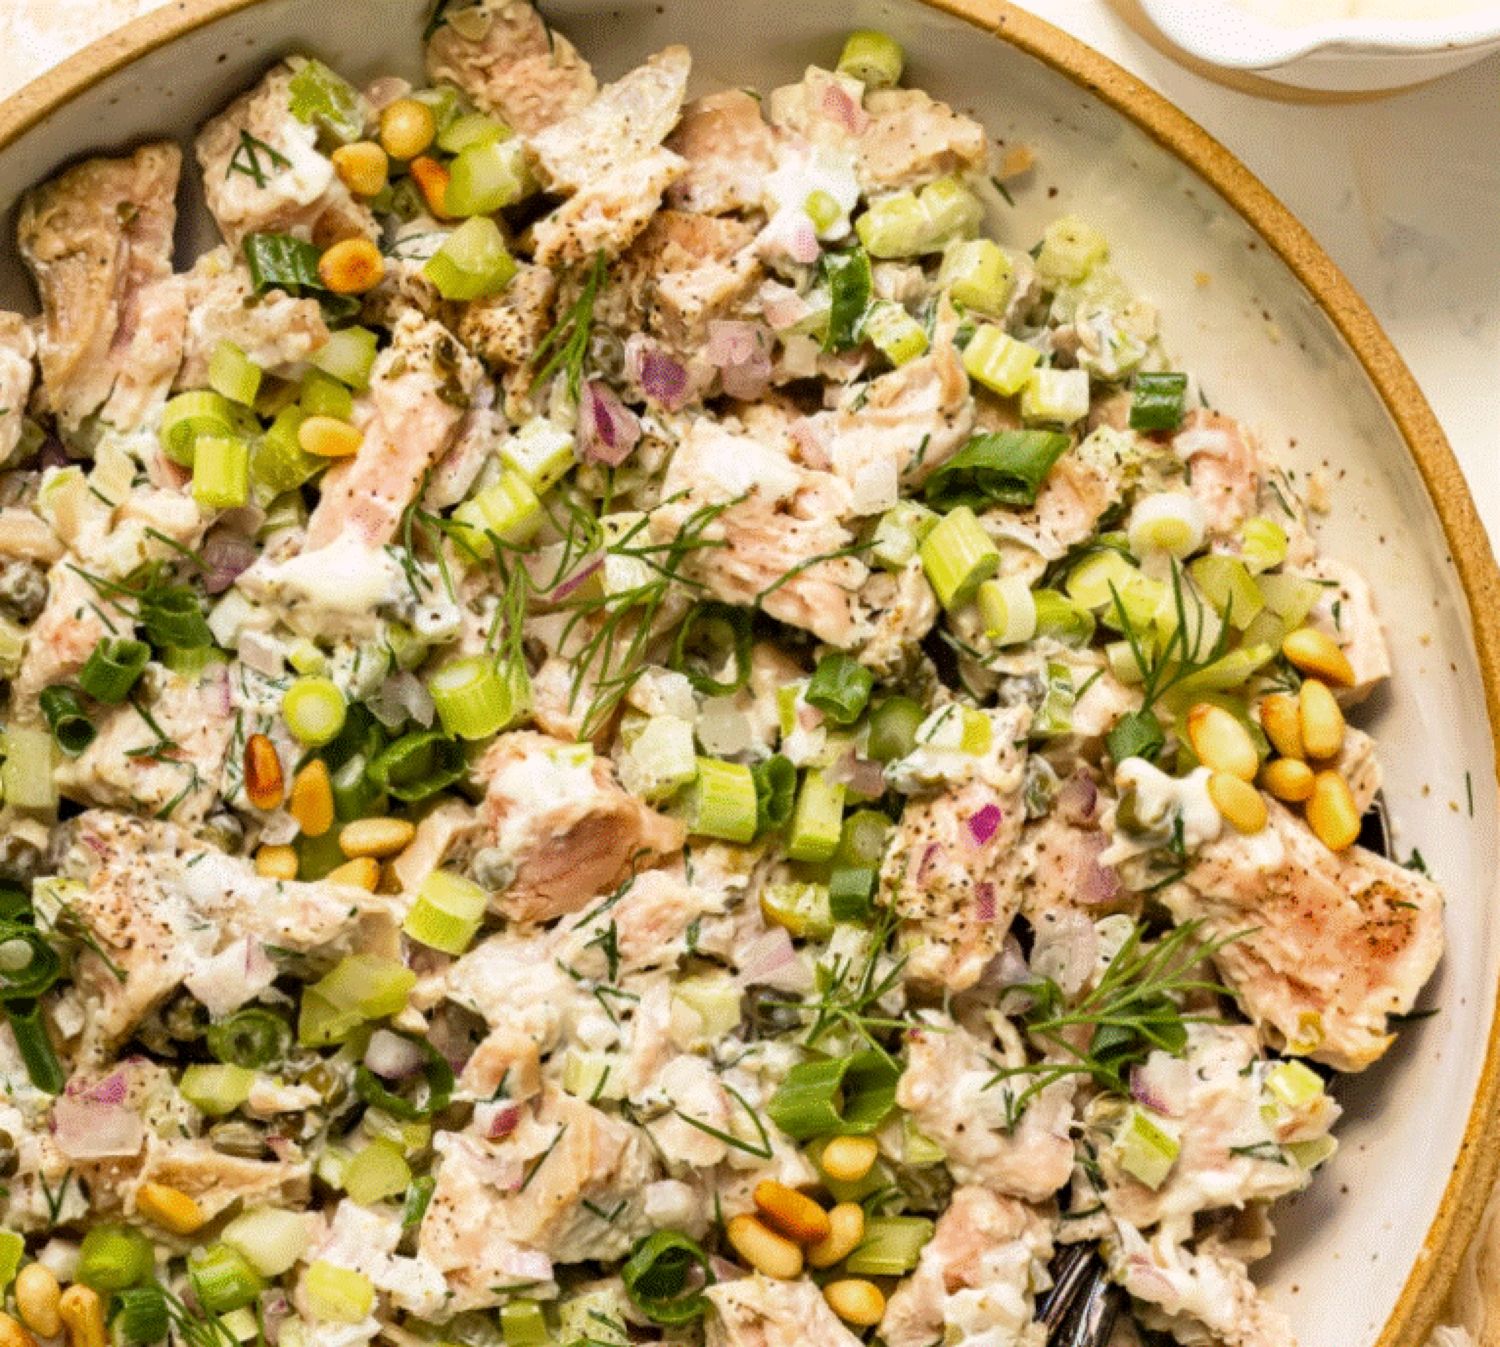 Cheia pentru o salată de ton perfectă nu sunt ingredientele, ci modul în care o pregătiți. Trucul care o face irezistibilă